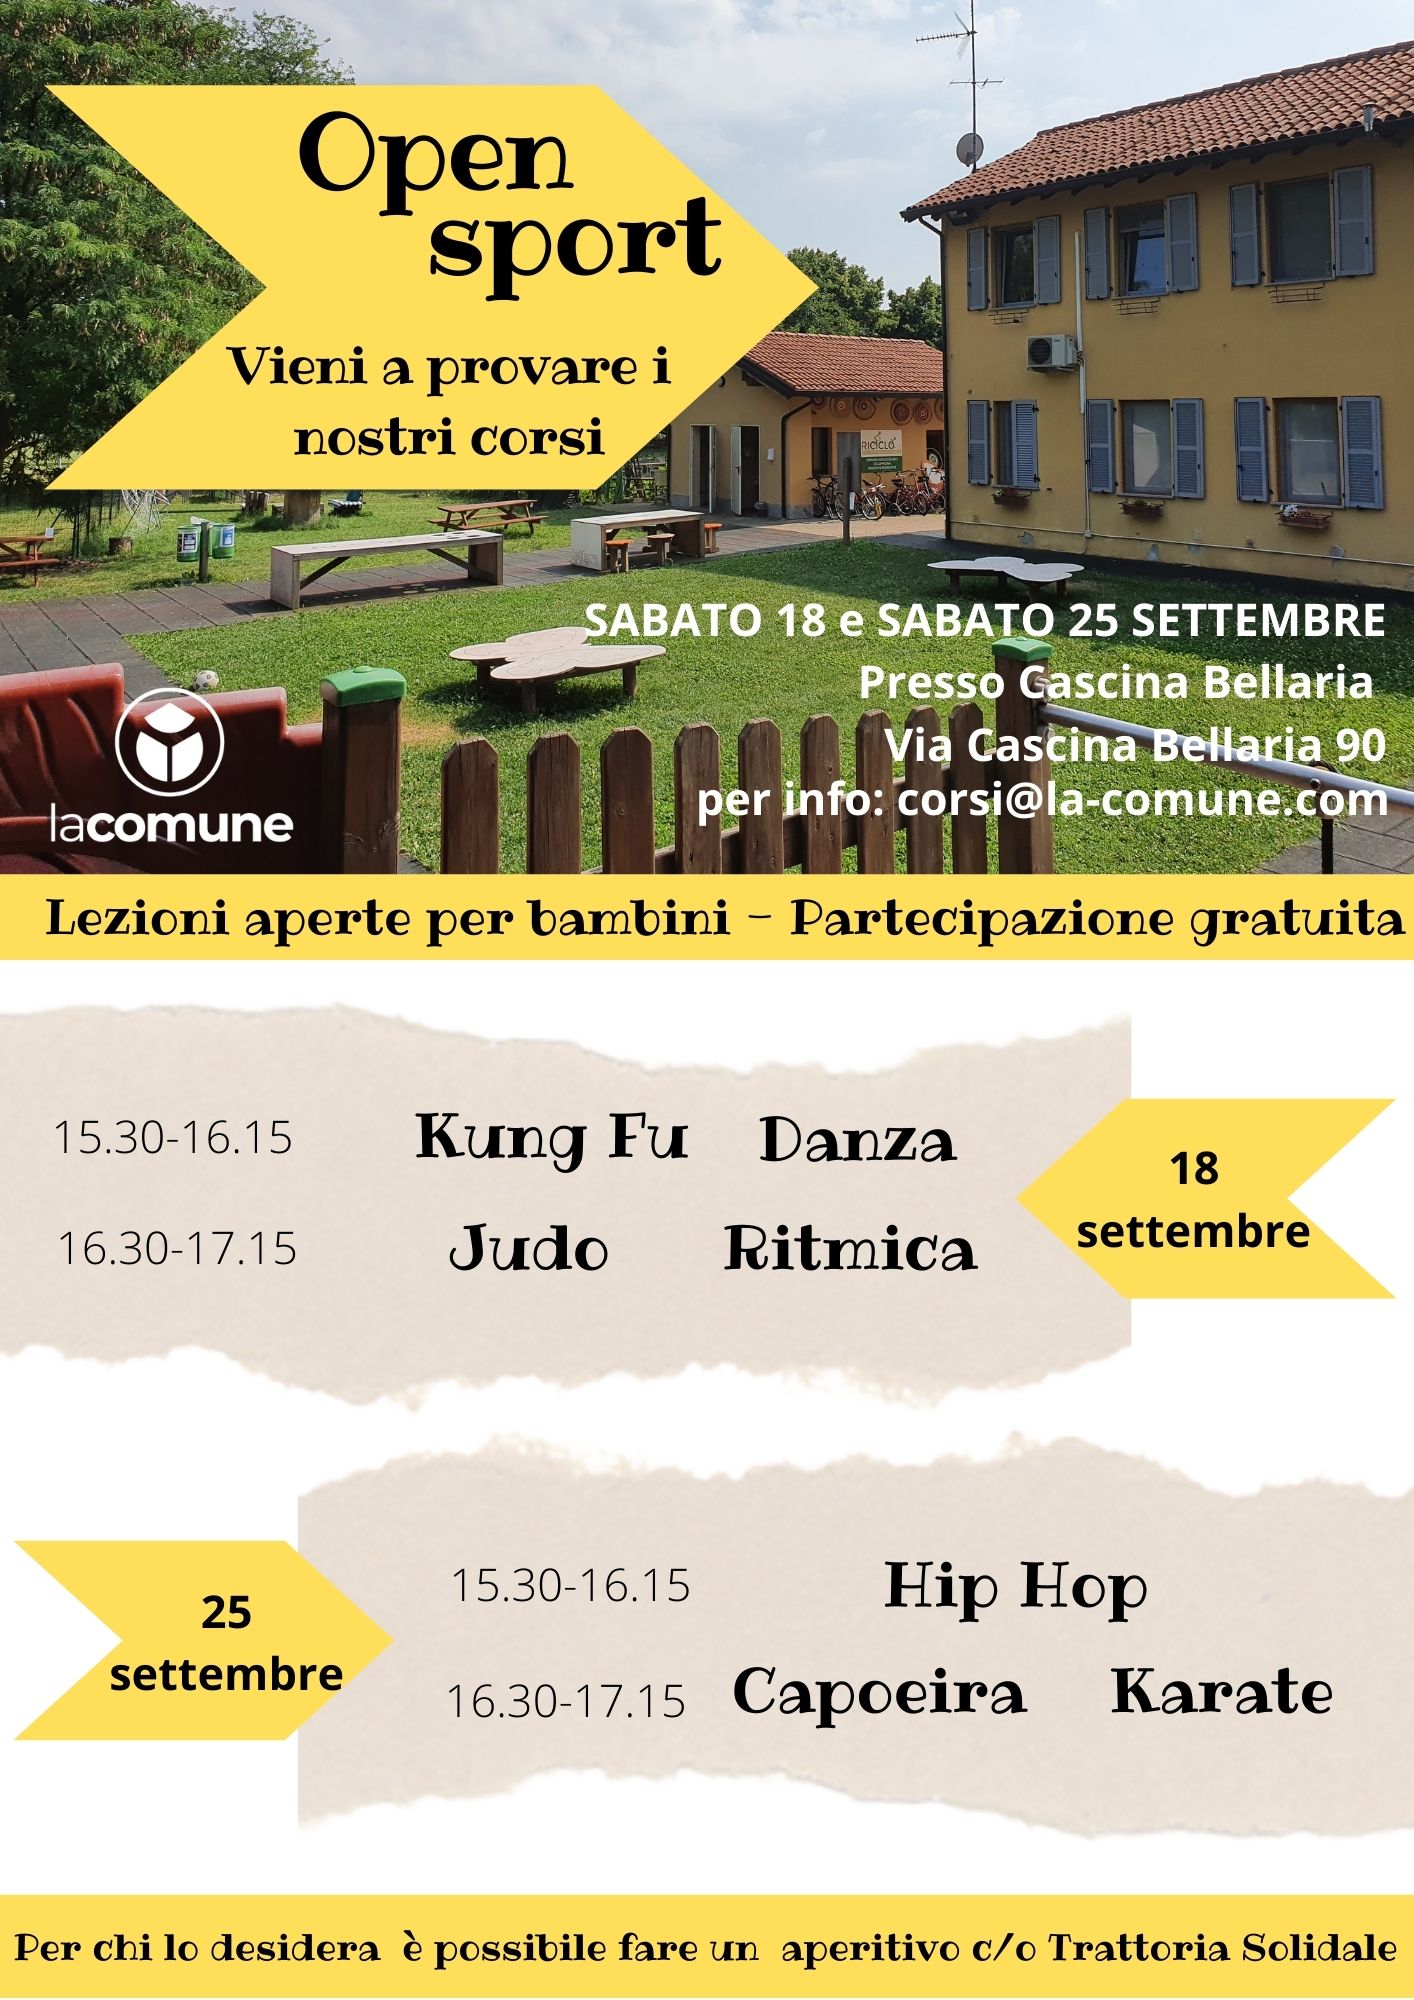 Open sport - lezioni aperte per bambini in Cascina Bellaria